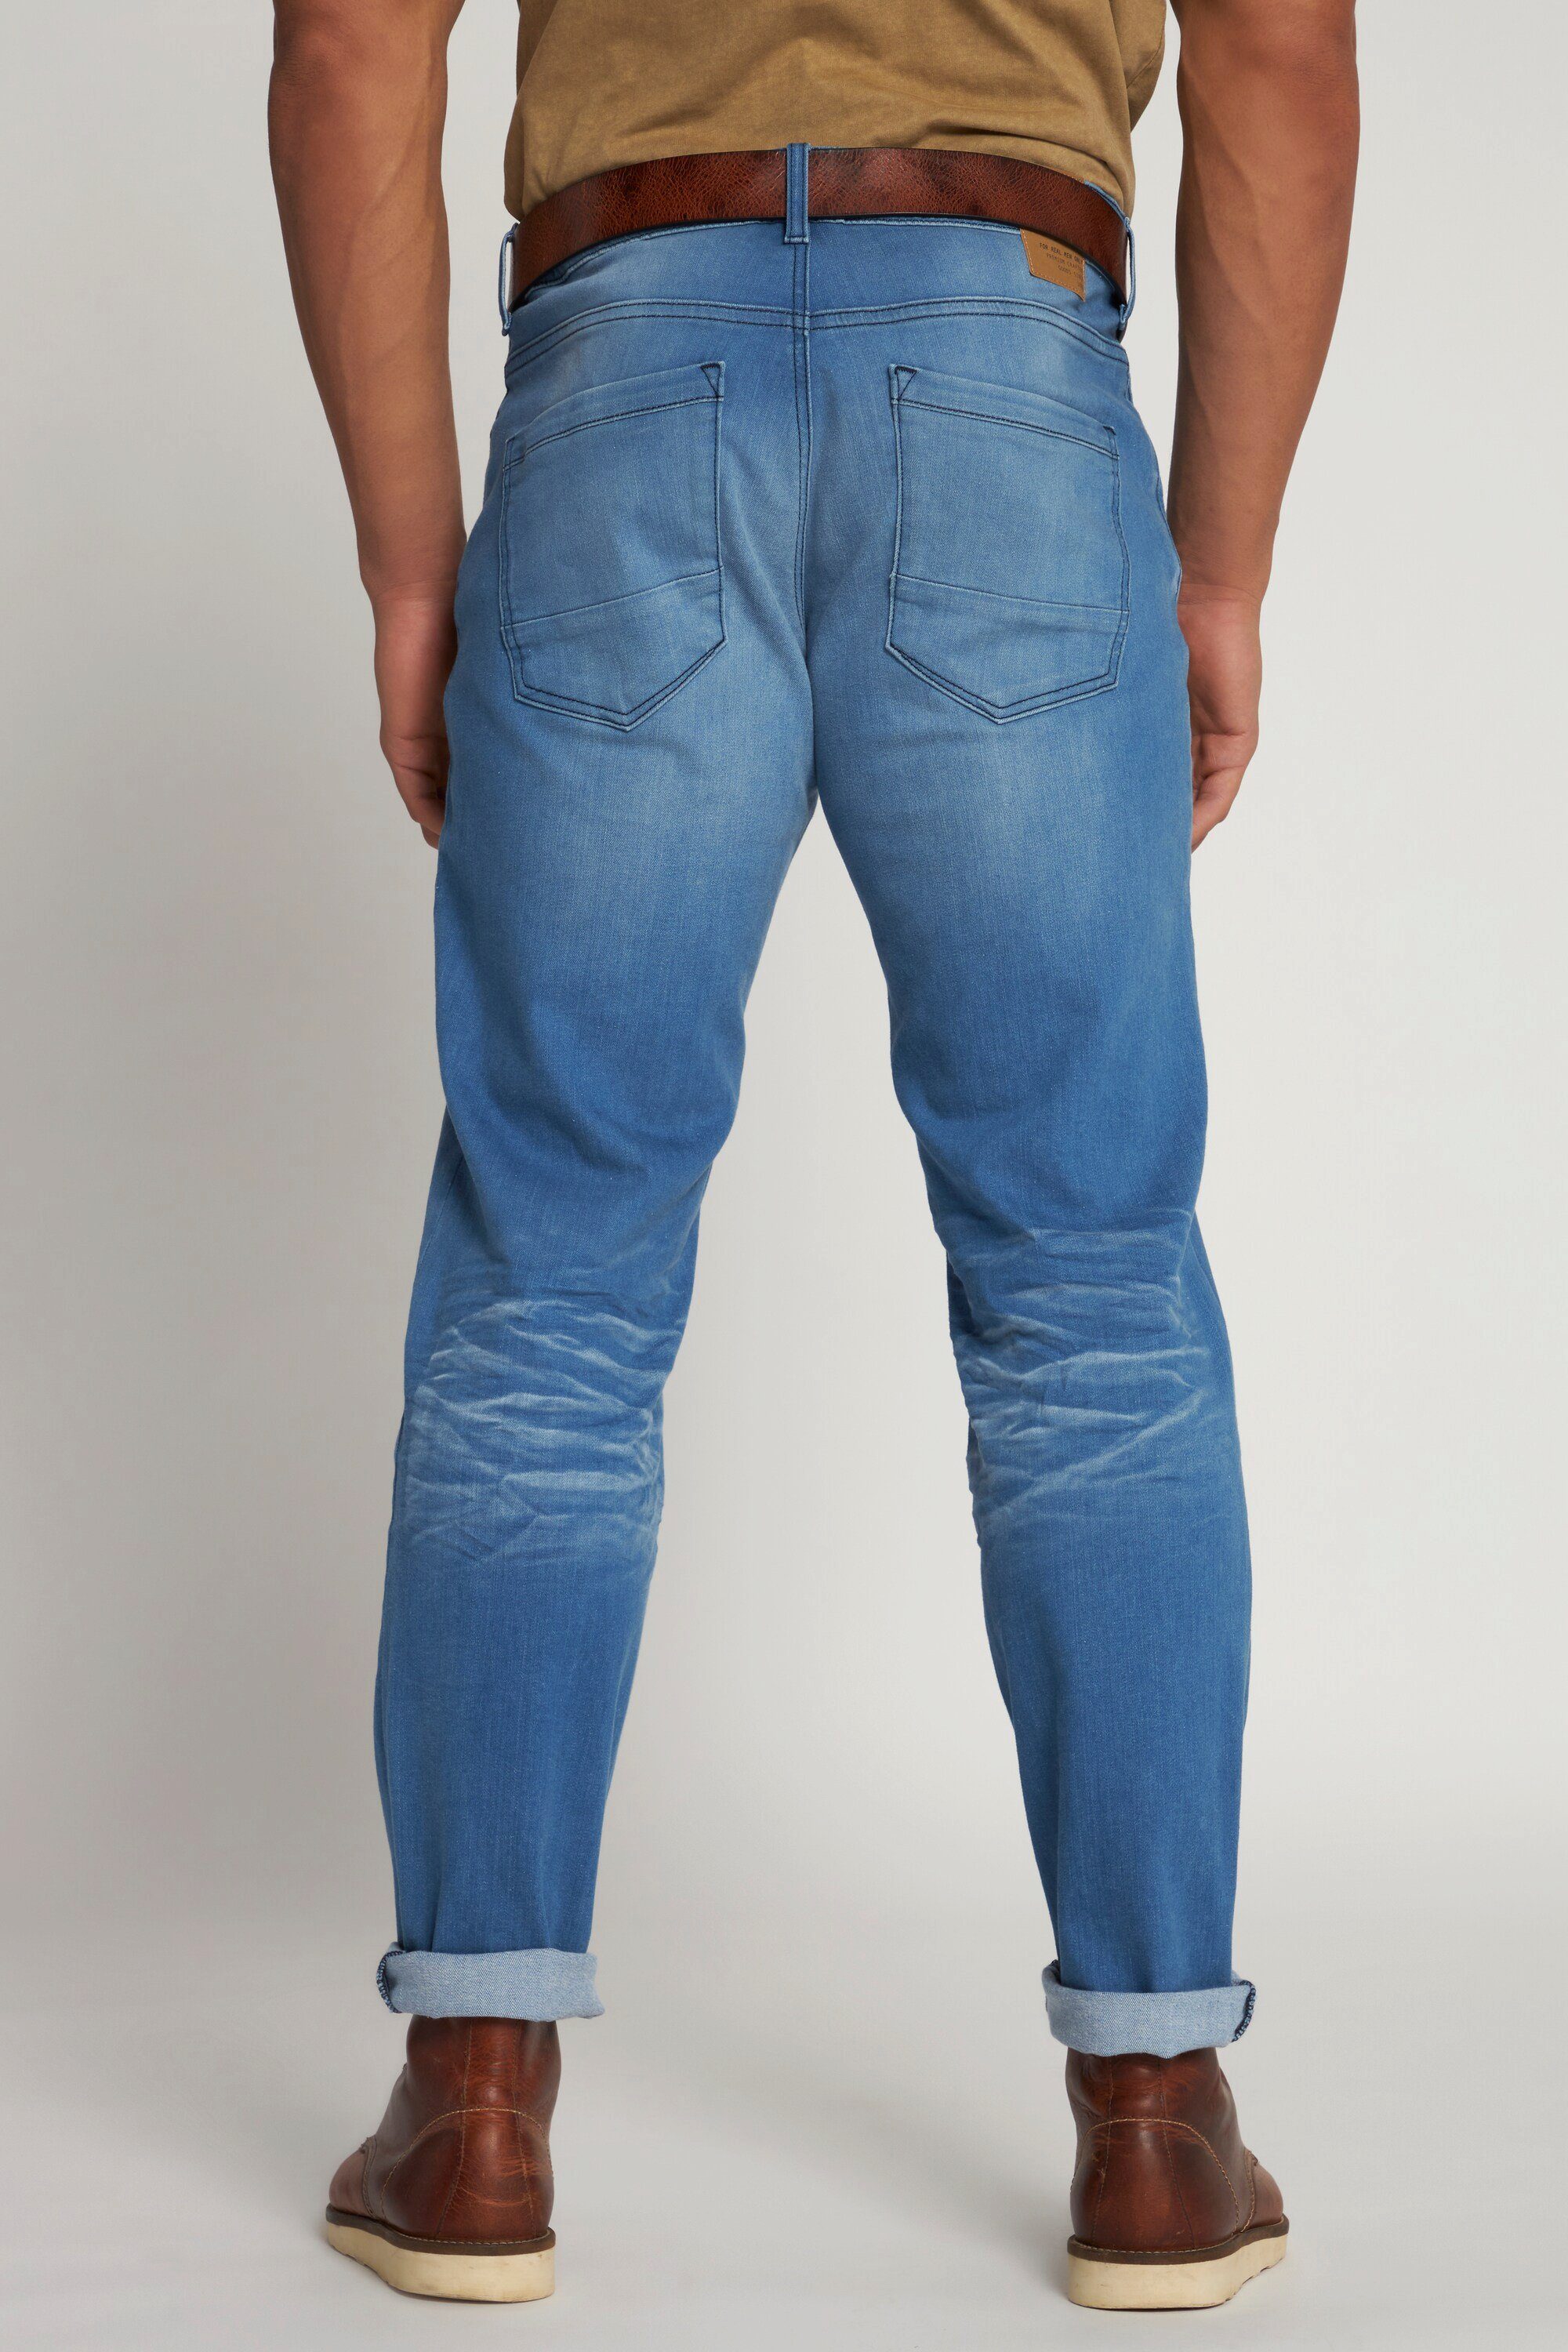 Vintage blue Denim 5-Pocket-Jeans Loose Fit Look light Jeans JP1880 Tapered